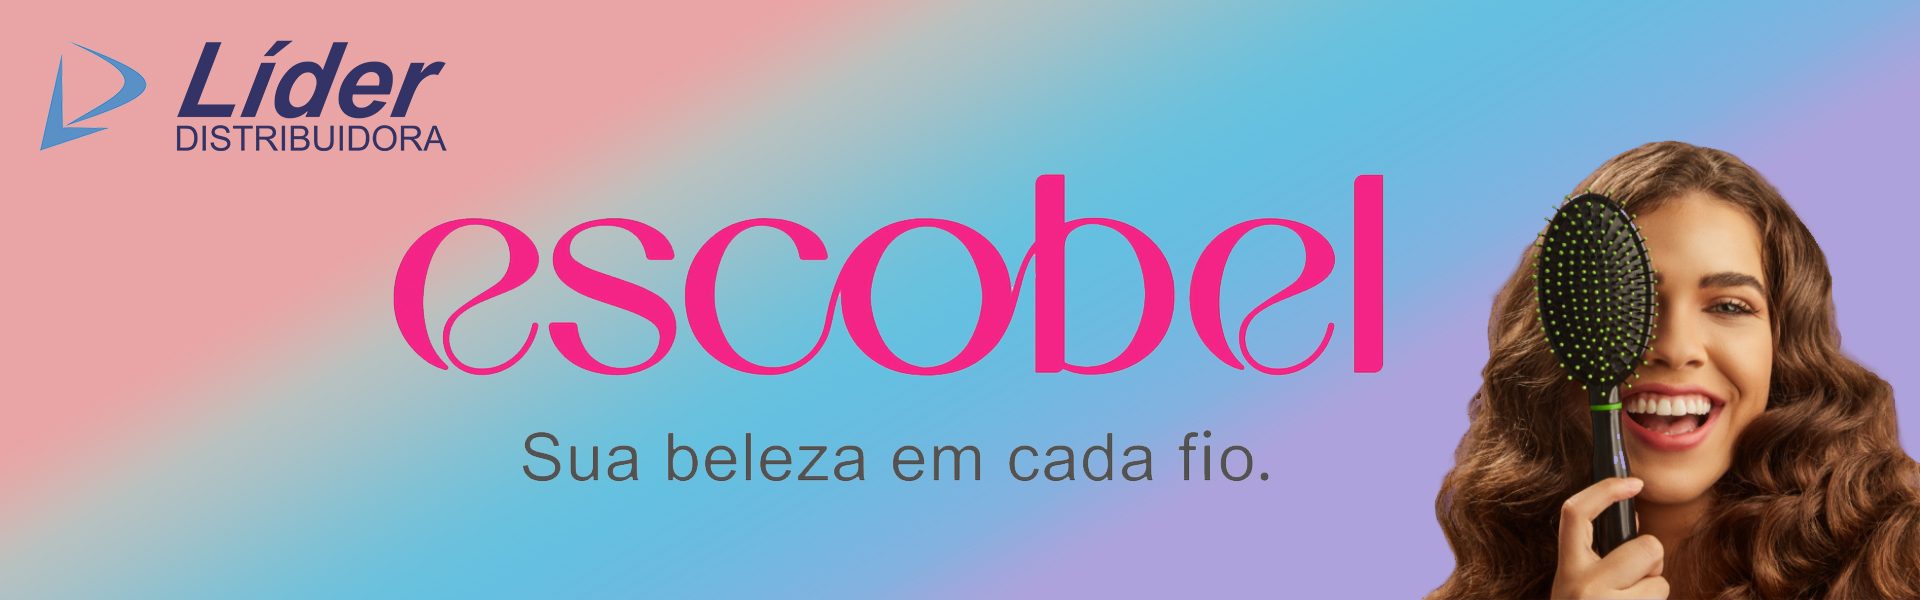 Banner Escobel